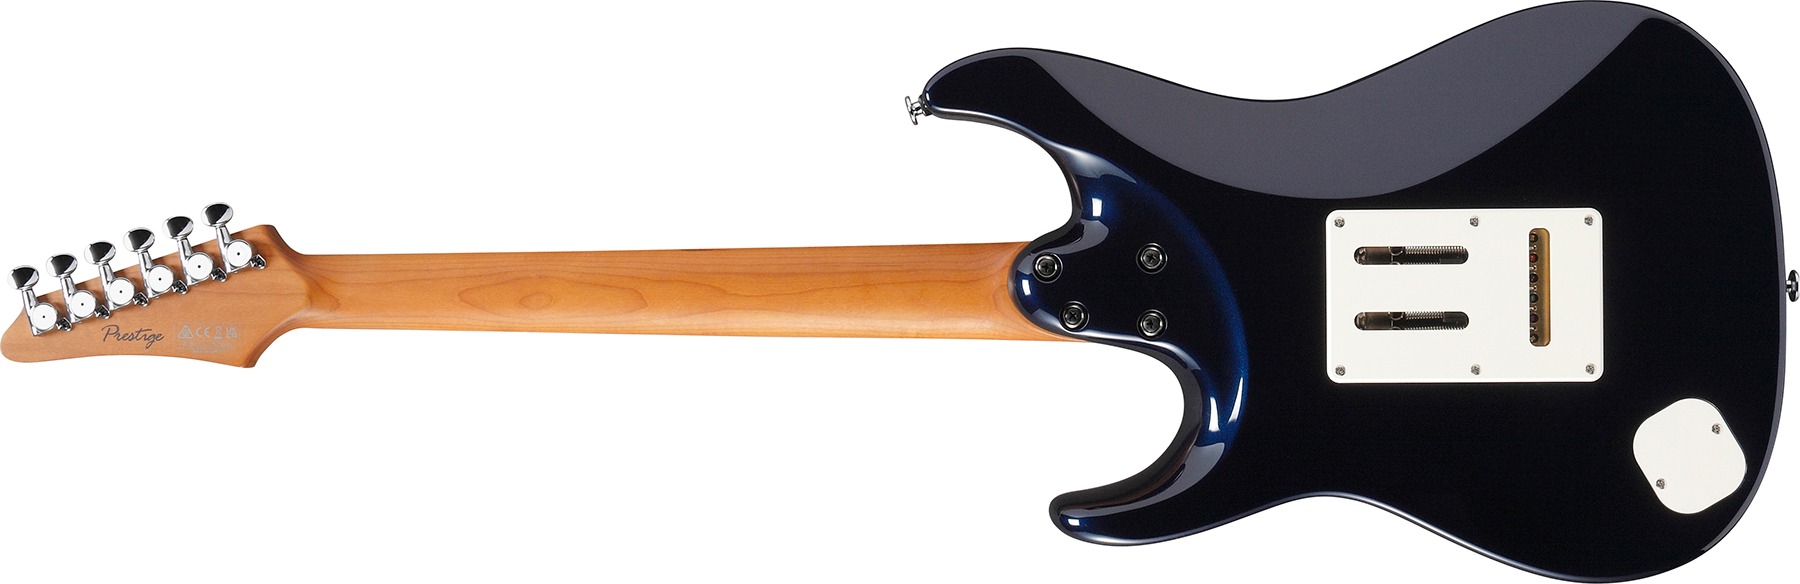 Ibanez Az2204nw Dtb Prestige Jap Hss Seymour Duncan Trem Rw - Dark Tide Blue - E-Gitarre in Str-Form - Variation 1